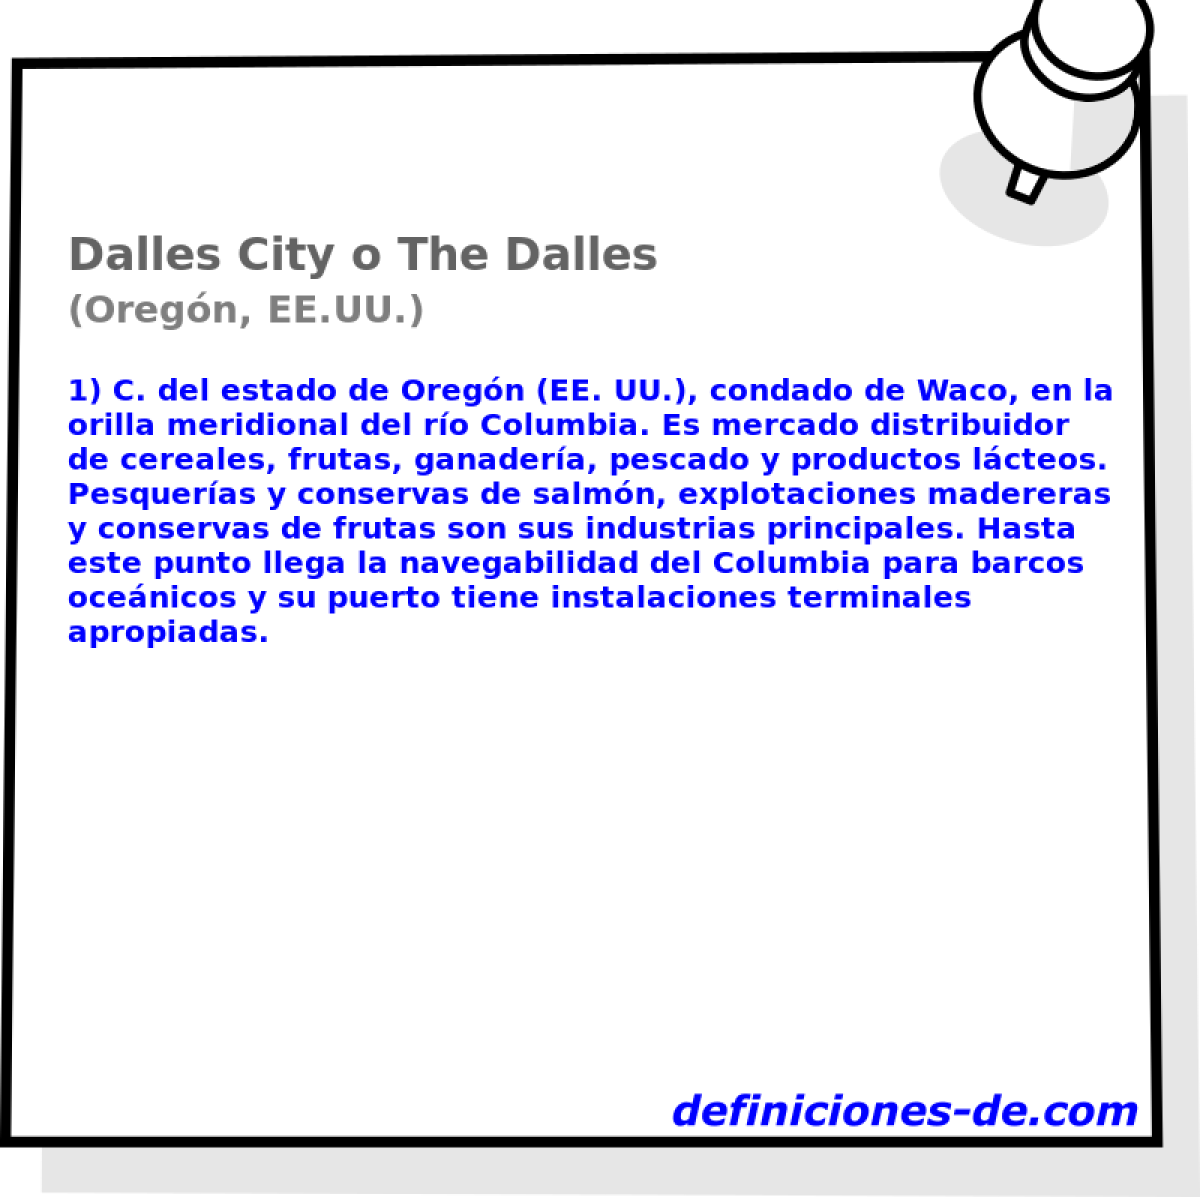 Dalles City o The Dalles (Oregn, EE.UU.)